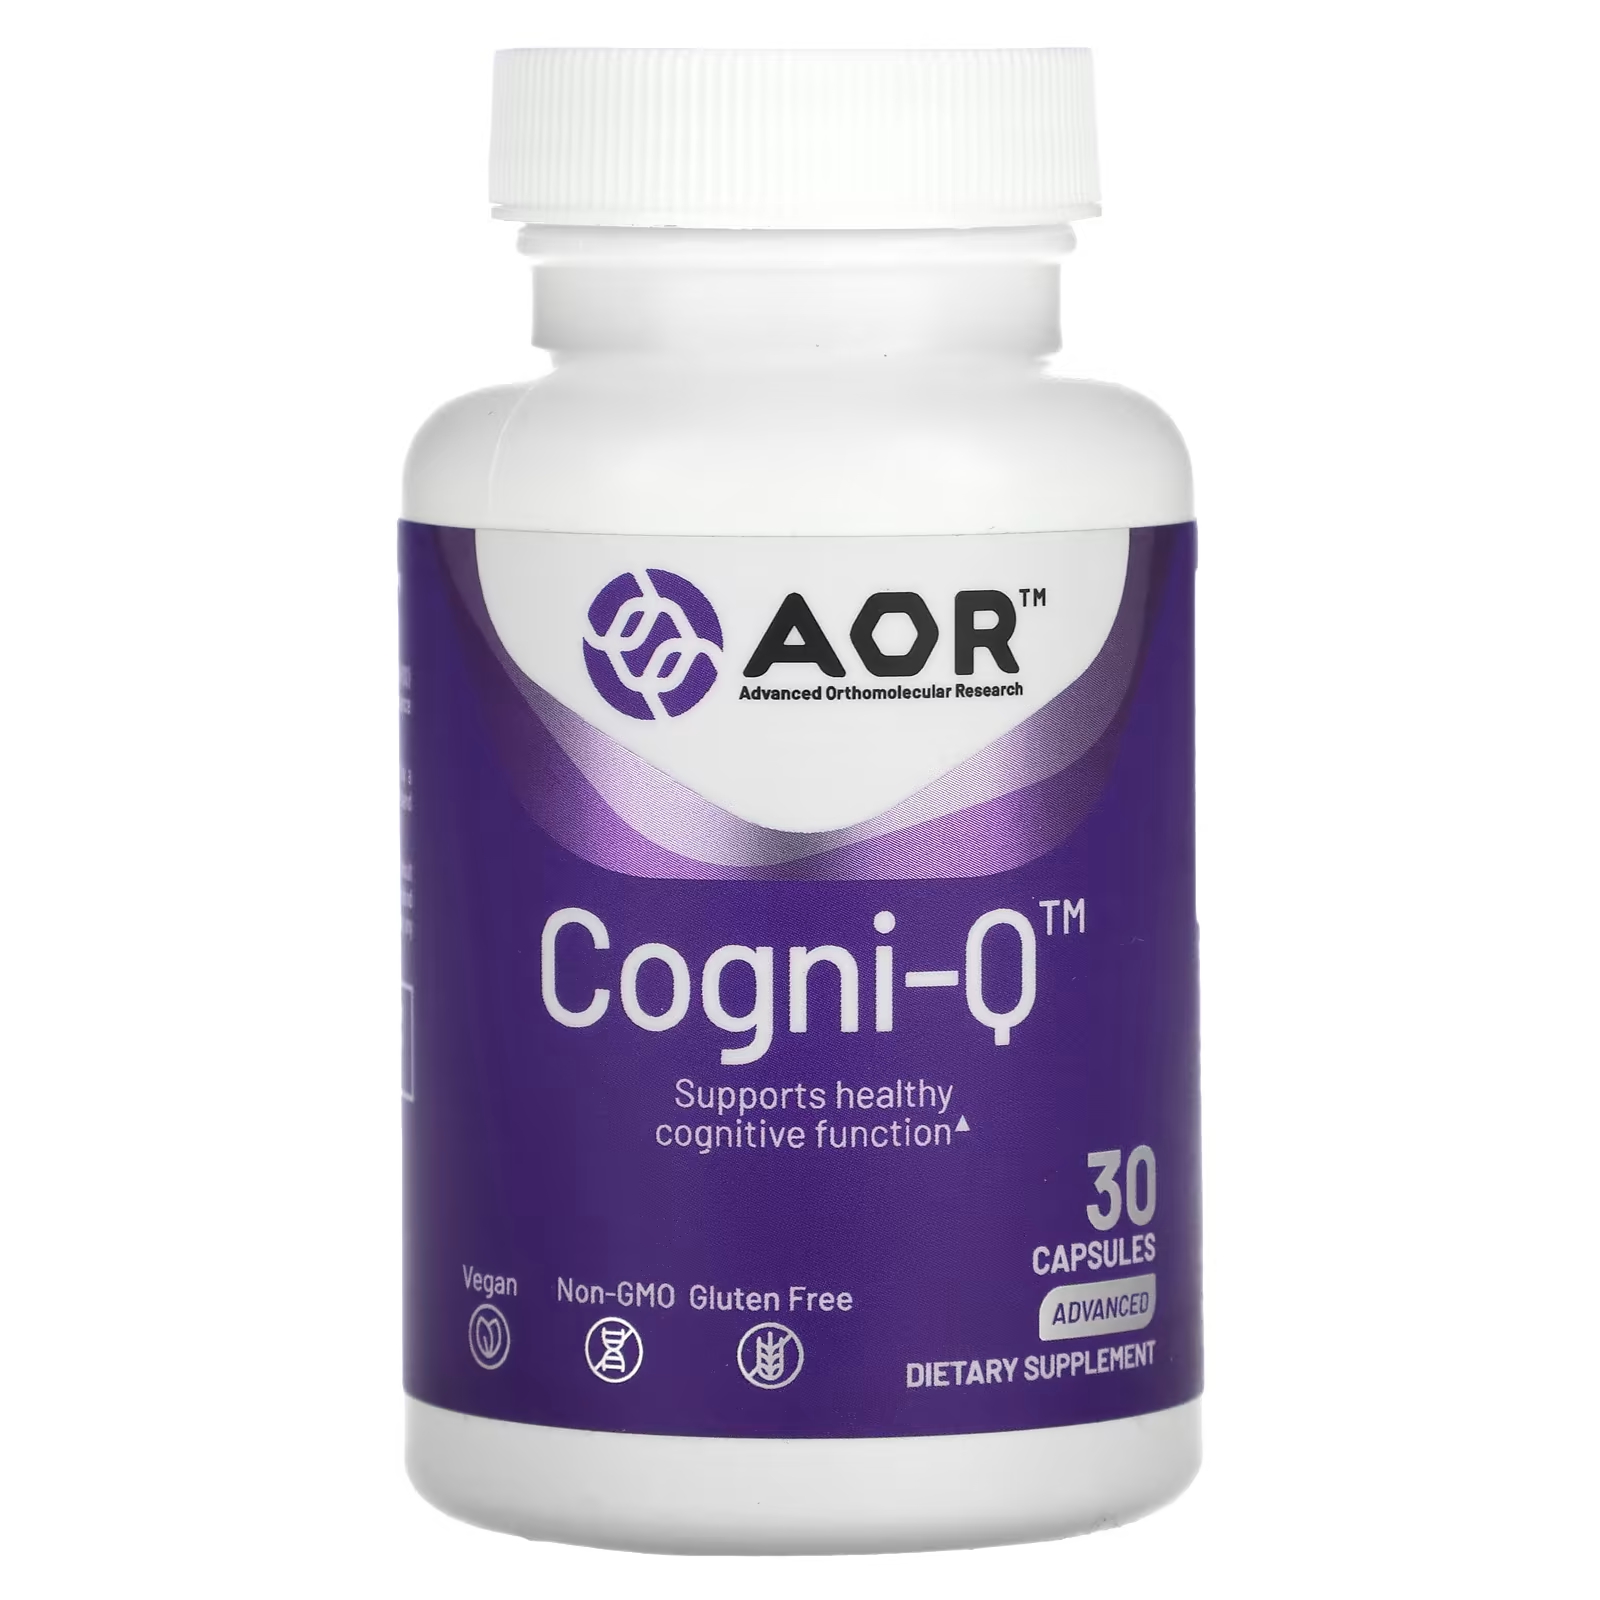 цена Передовые ортомолекулярные исследования AOR Cogni-Q, 30 капсул Advanced Orthomolecular Research AOR